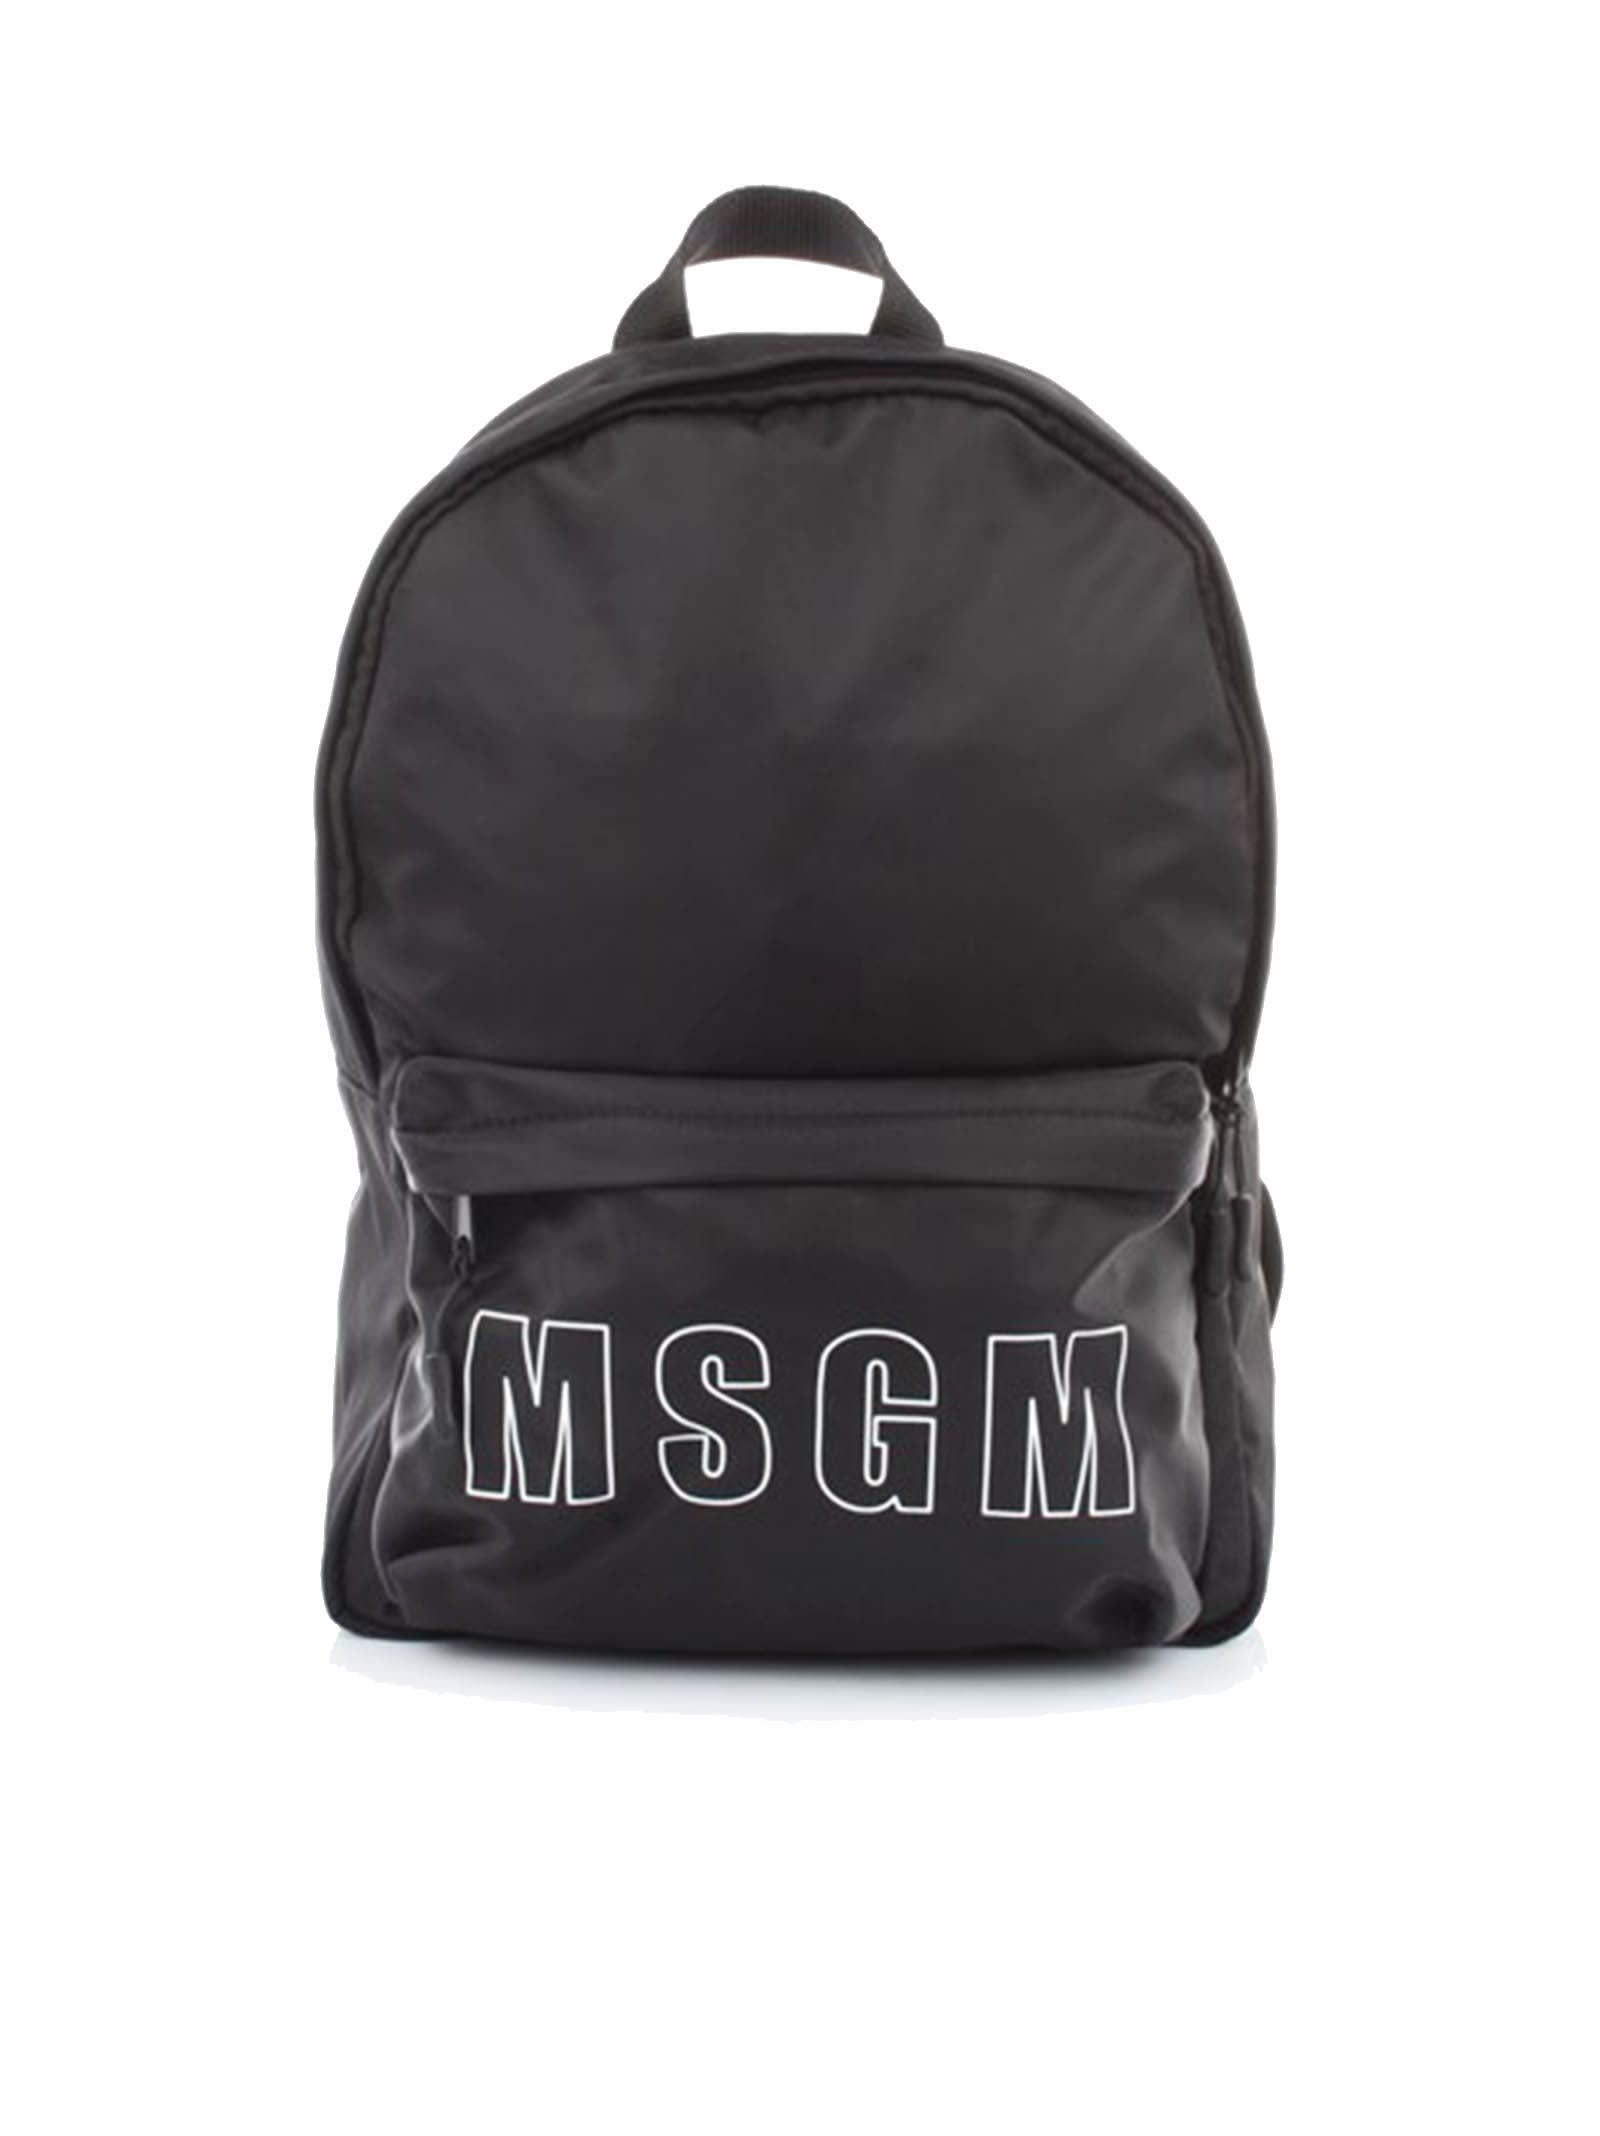 Msgm Nylon Black Backpack